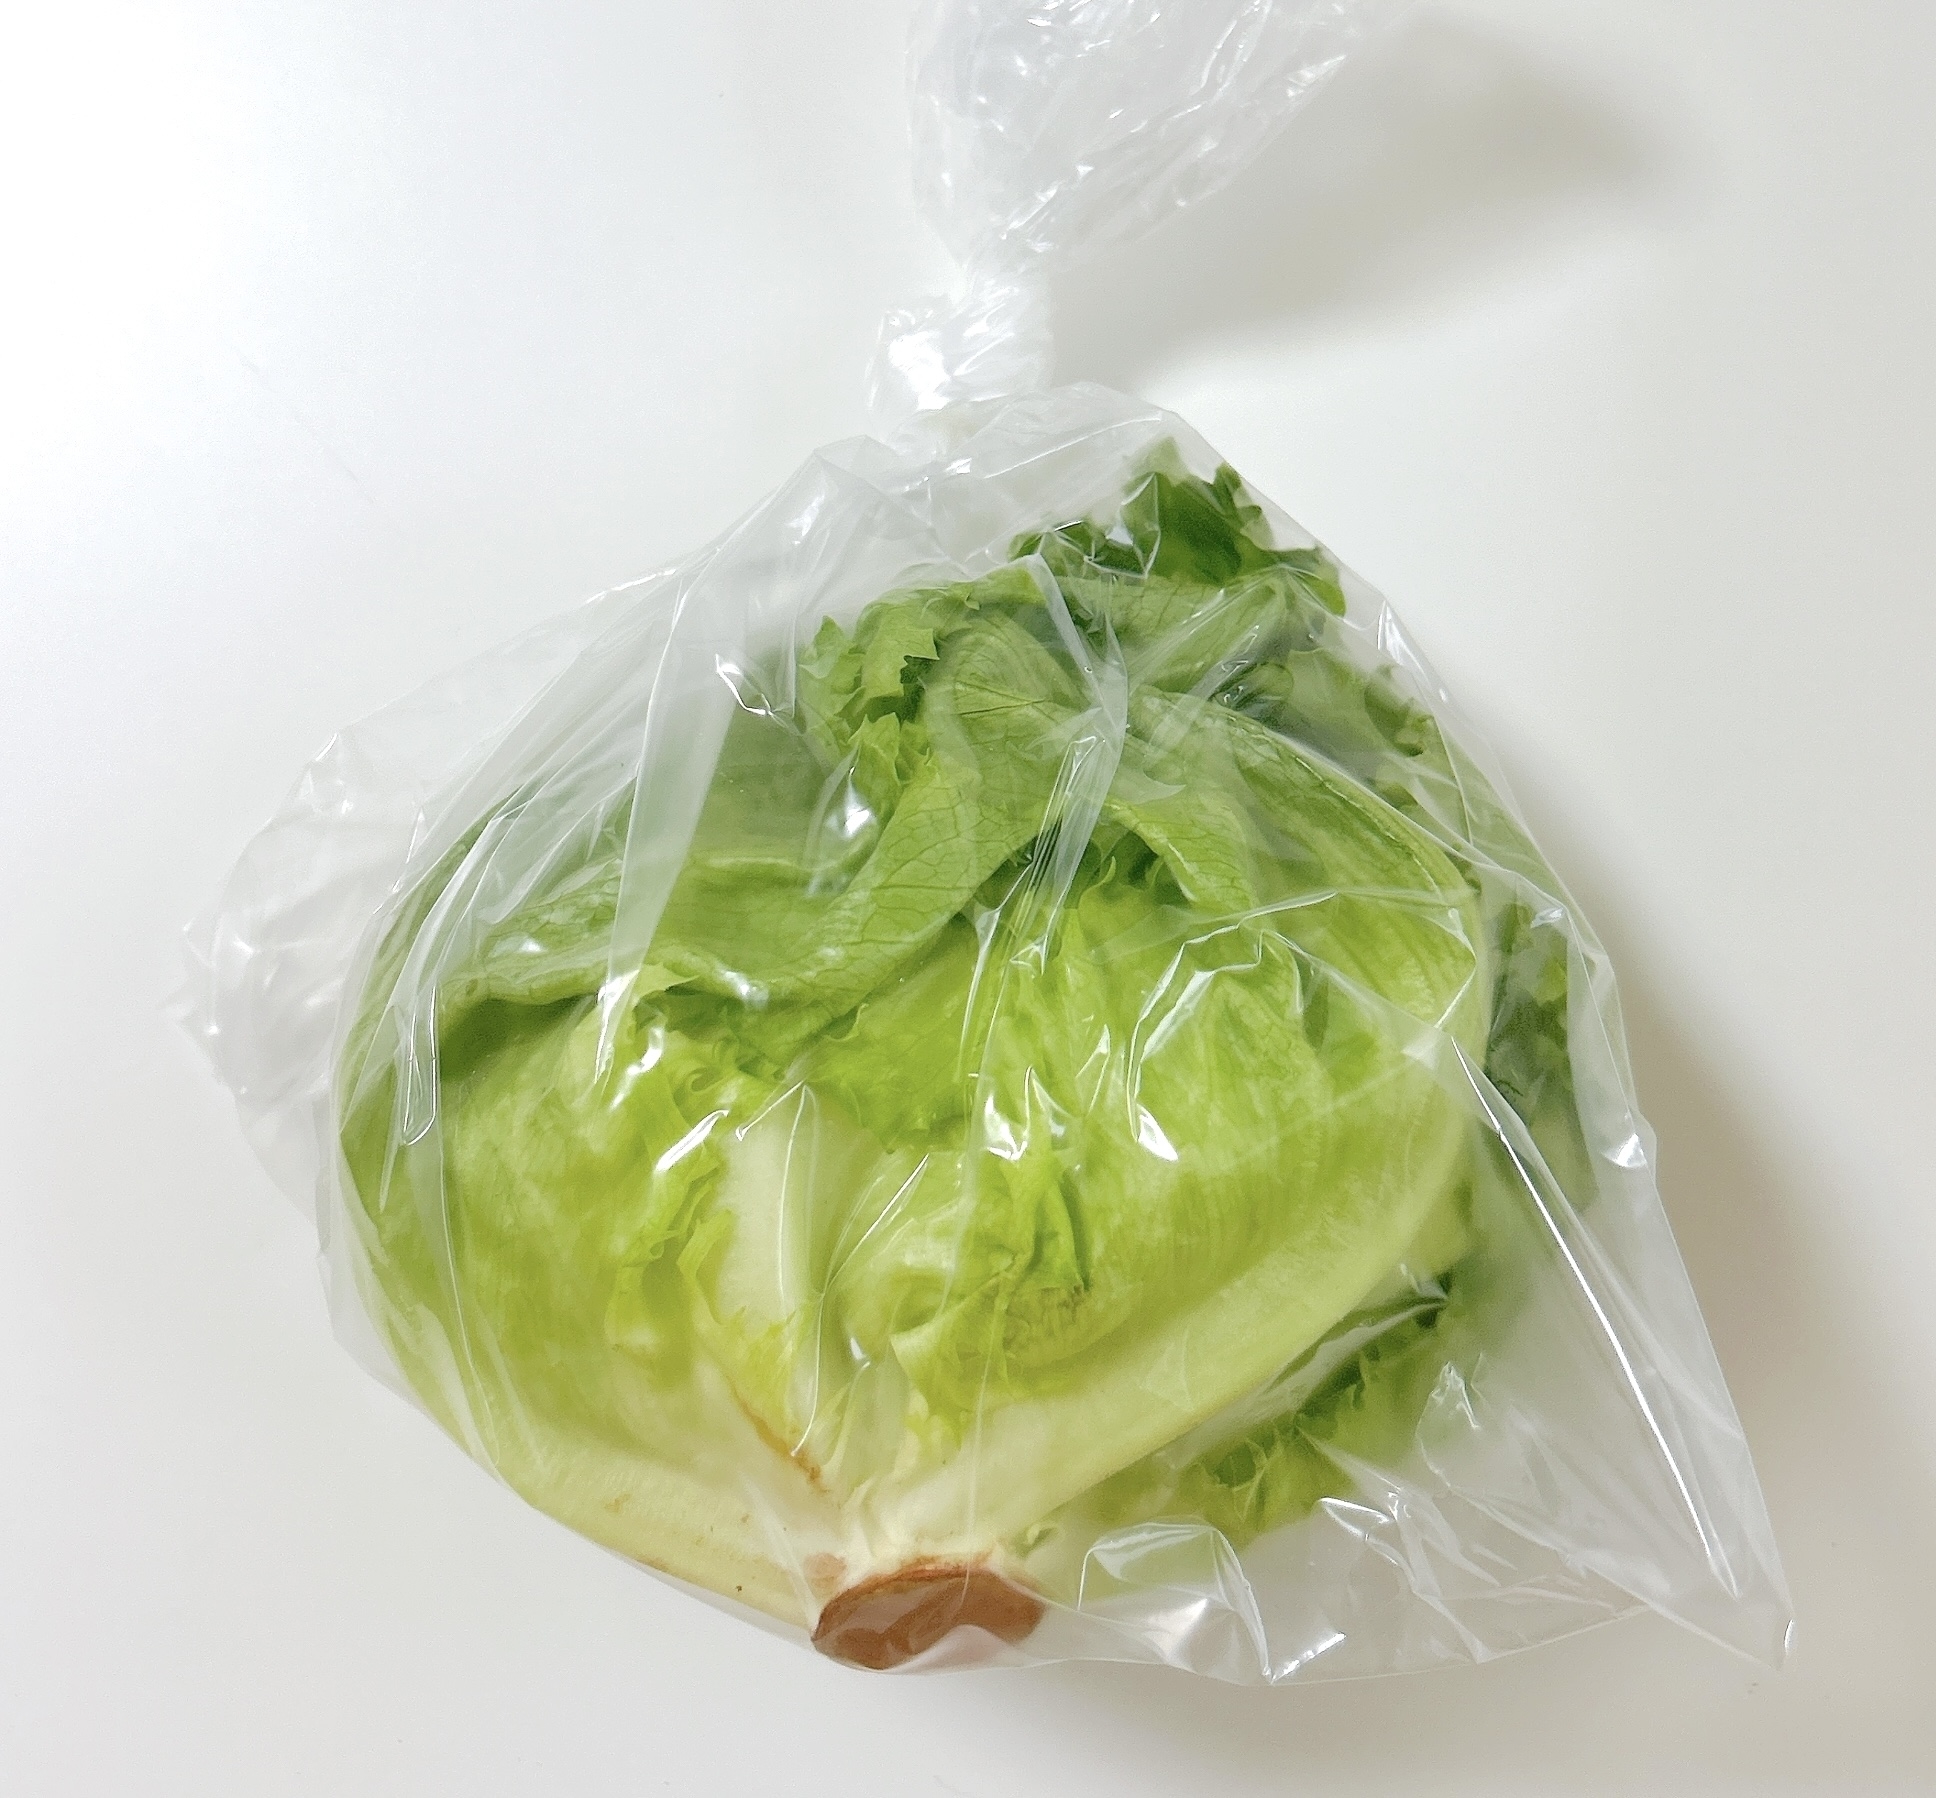 無印良品のおすすめキッチングッズ「野菜や果物の鮮度を保つポリエチレン袋」